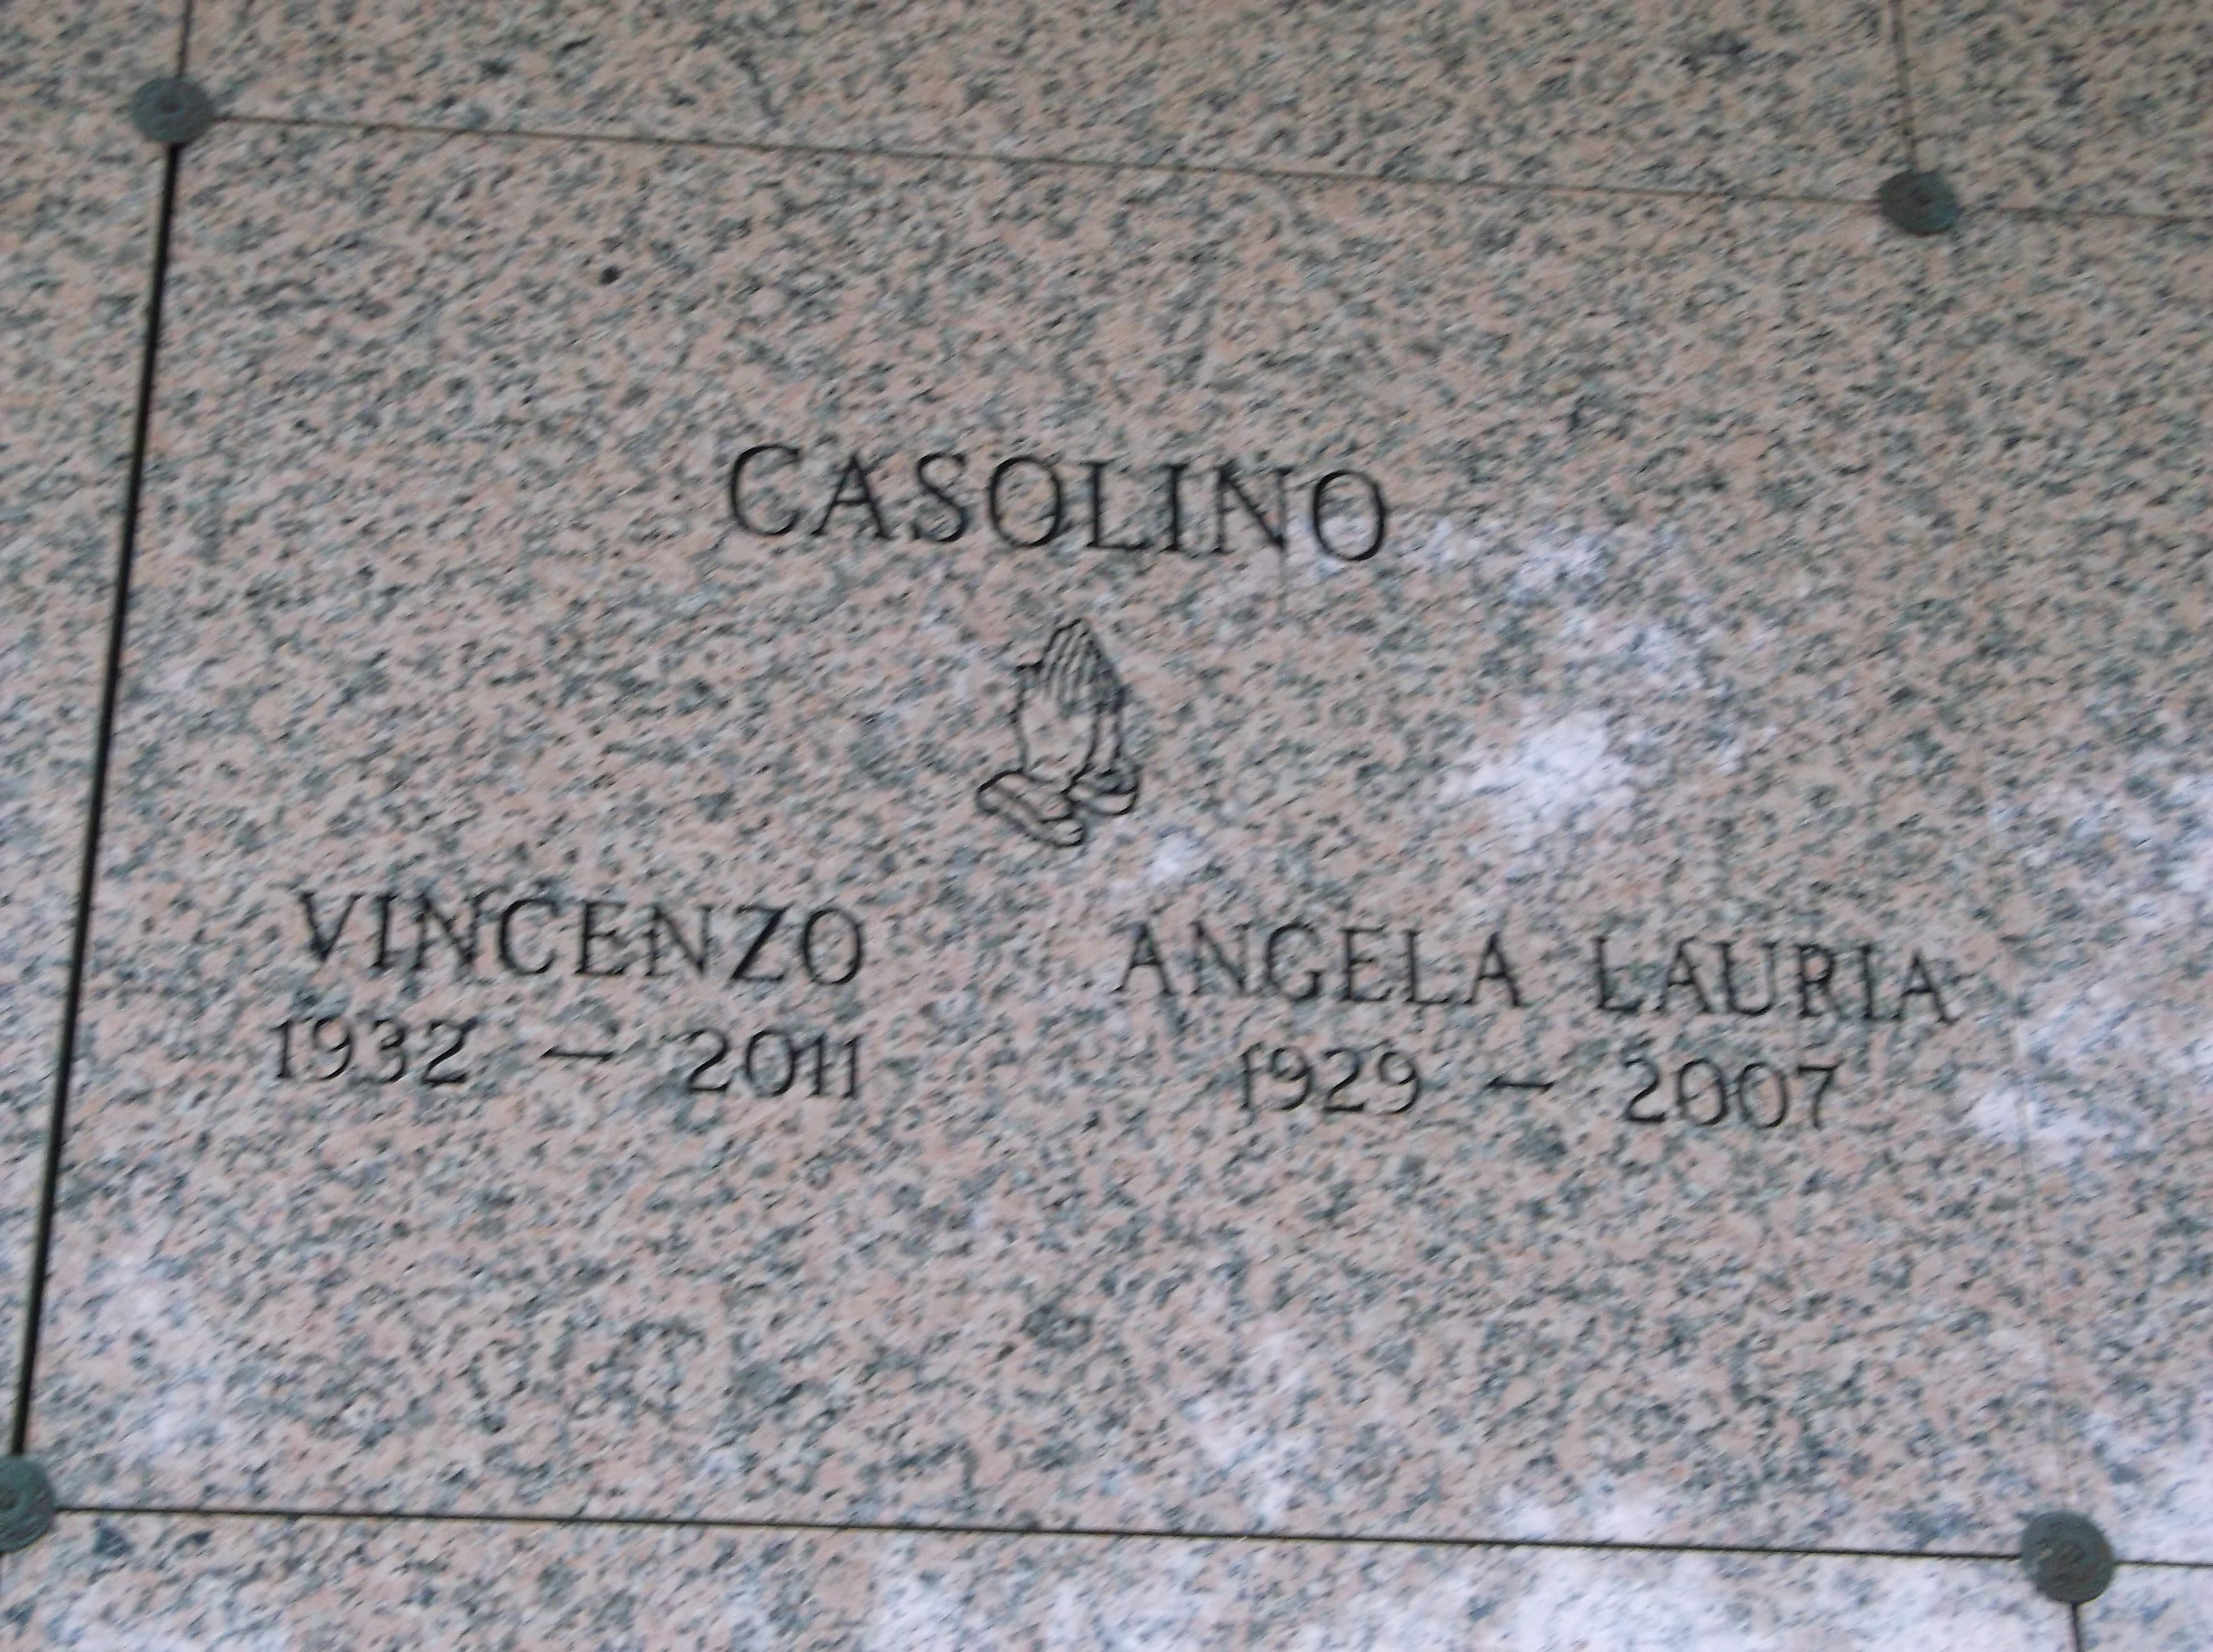 Angela Lauria Casolino